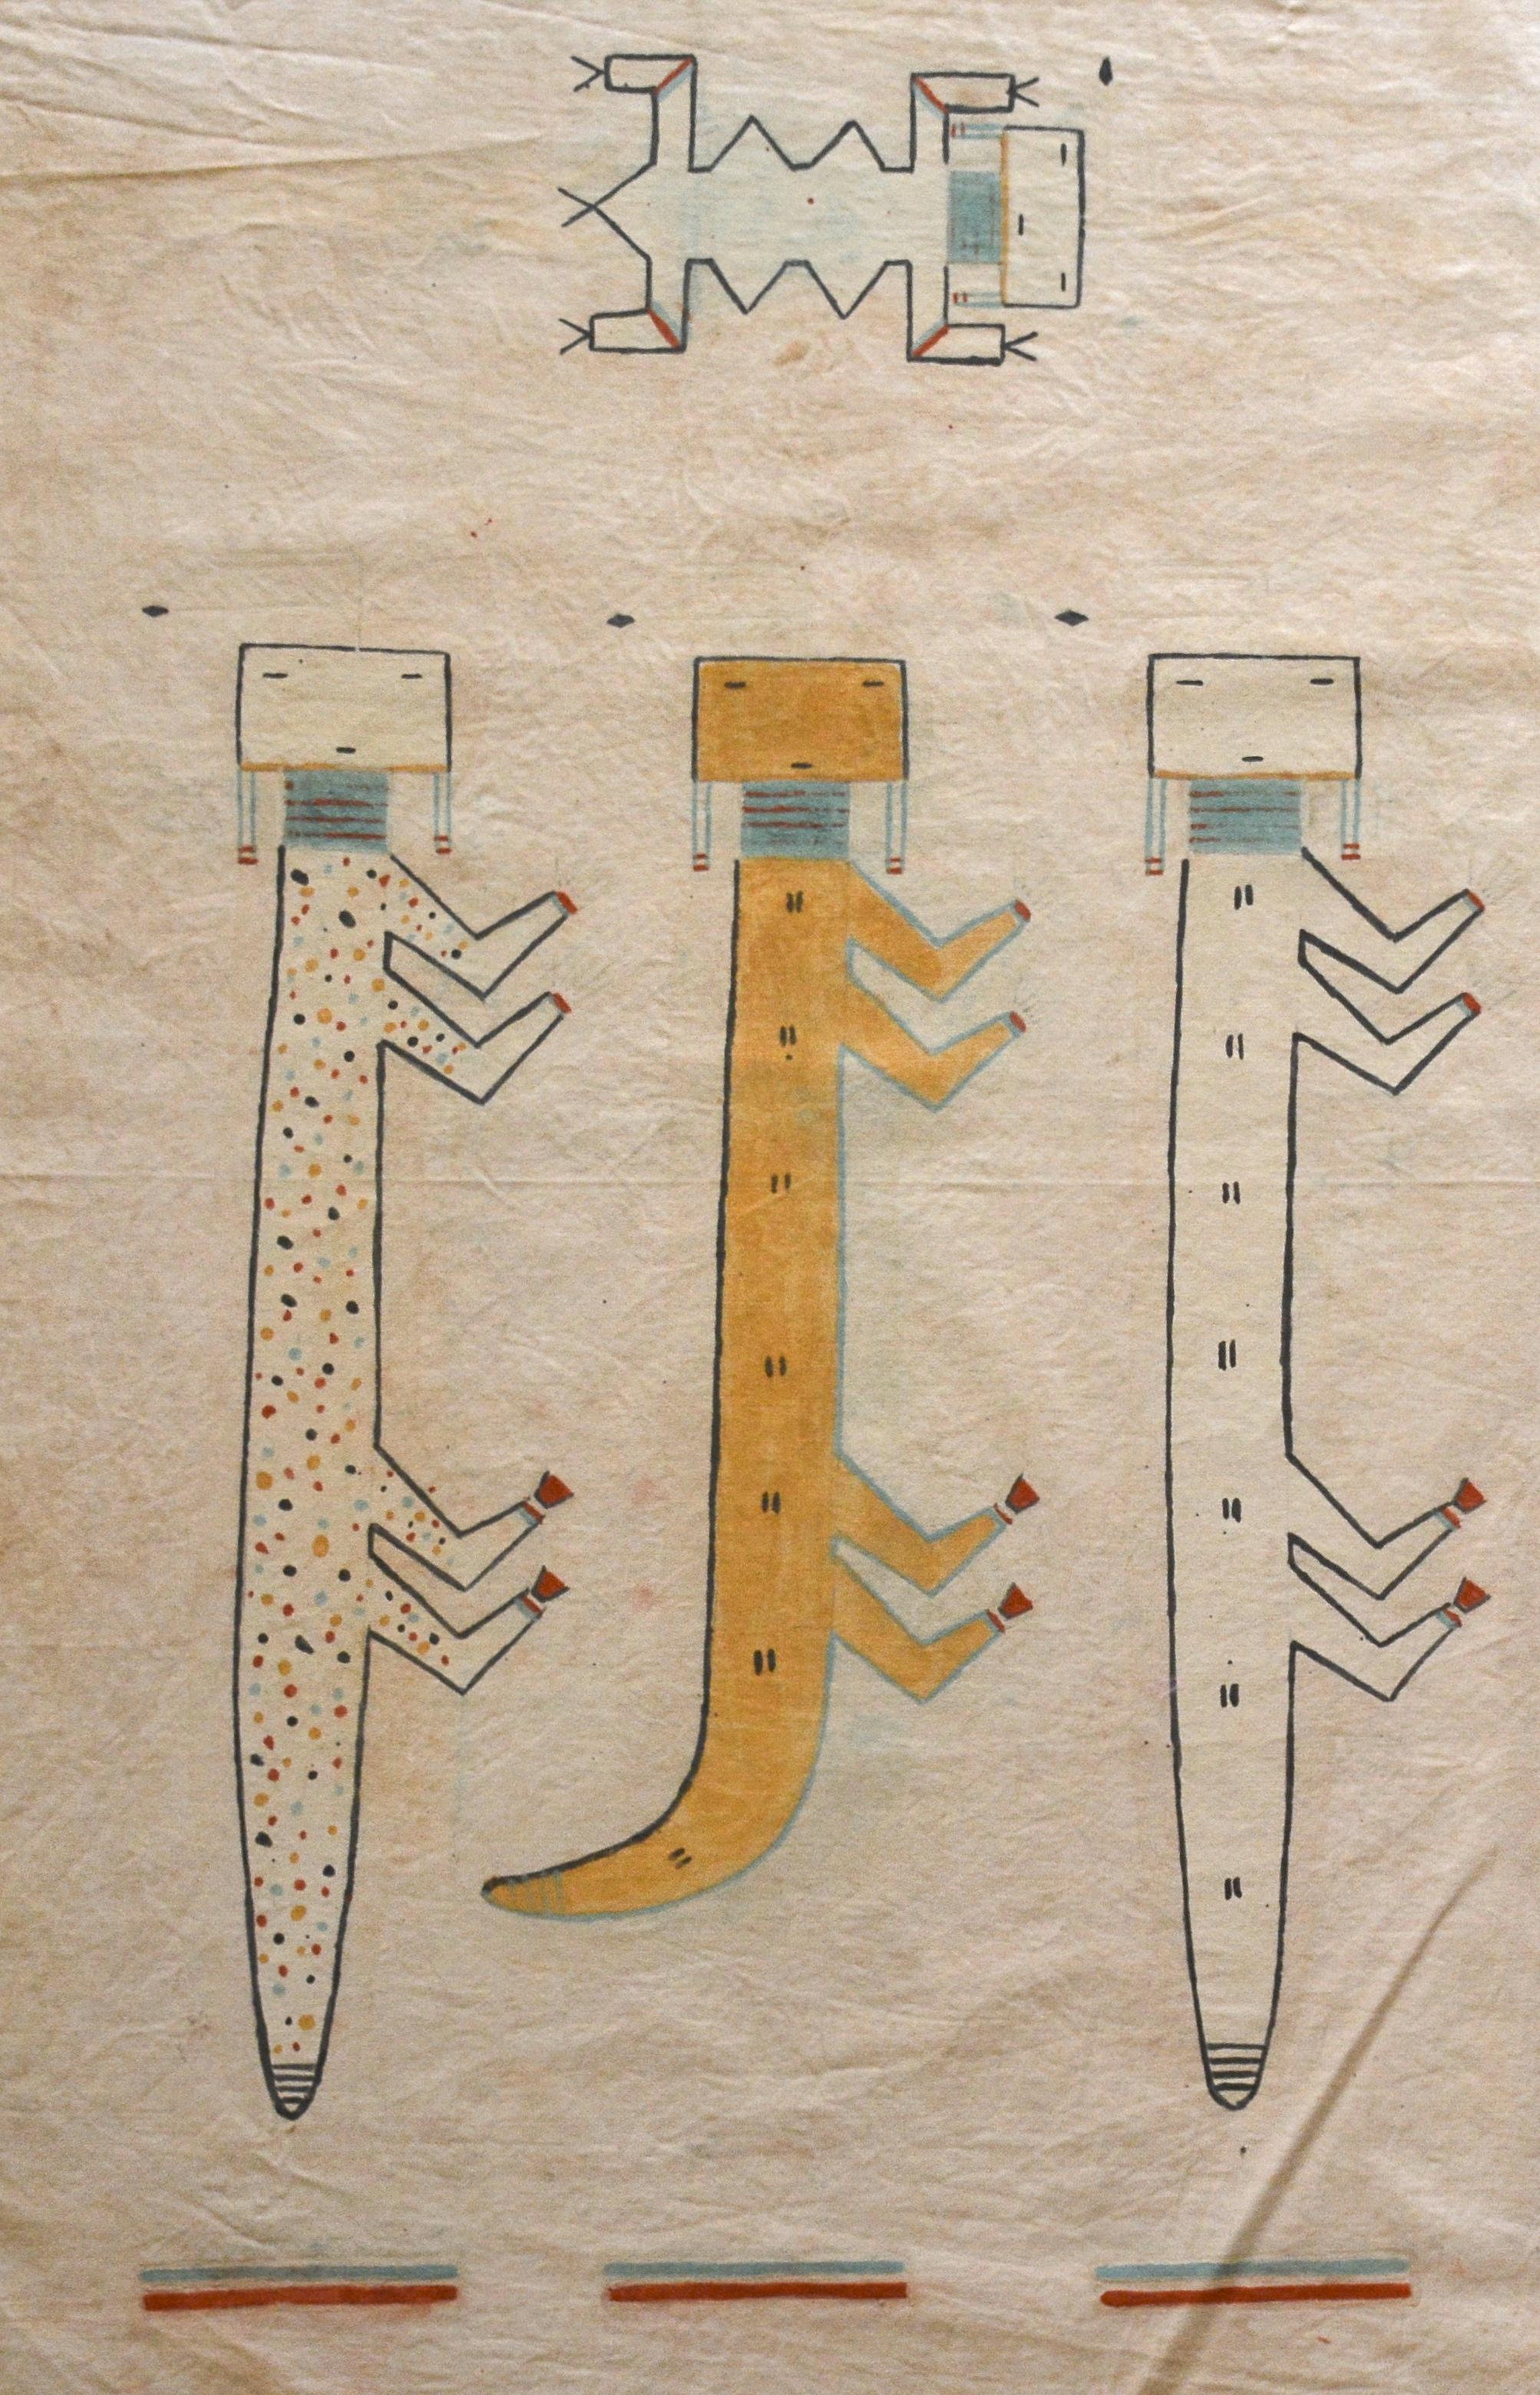 Unbekannt
Navajo-Bildschrift auf Musselin
Sechs Yeis mit zwei Wassertierwächtern
Musselin, Mineralpigmente, Sand.
Navajo-Medizinmann aktiv 1947 - 1970

Um sich an die verschiedenen Gemälde zu erinnern, greift der Medizinmann auf vorgefertigte